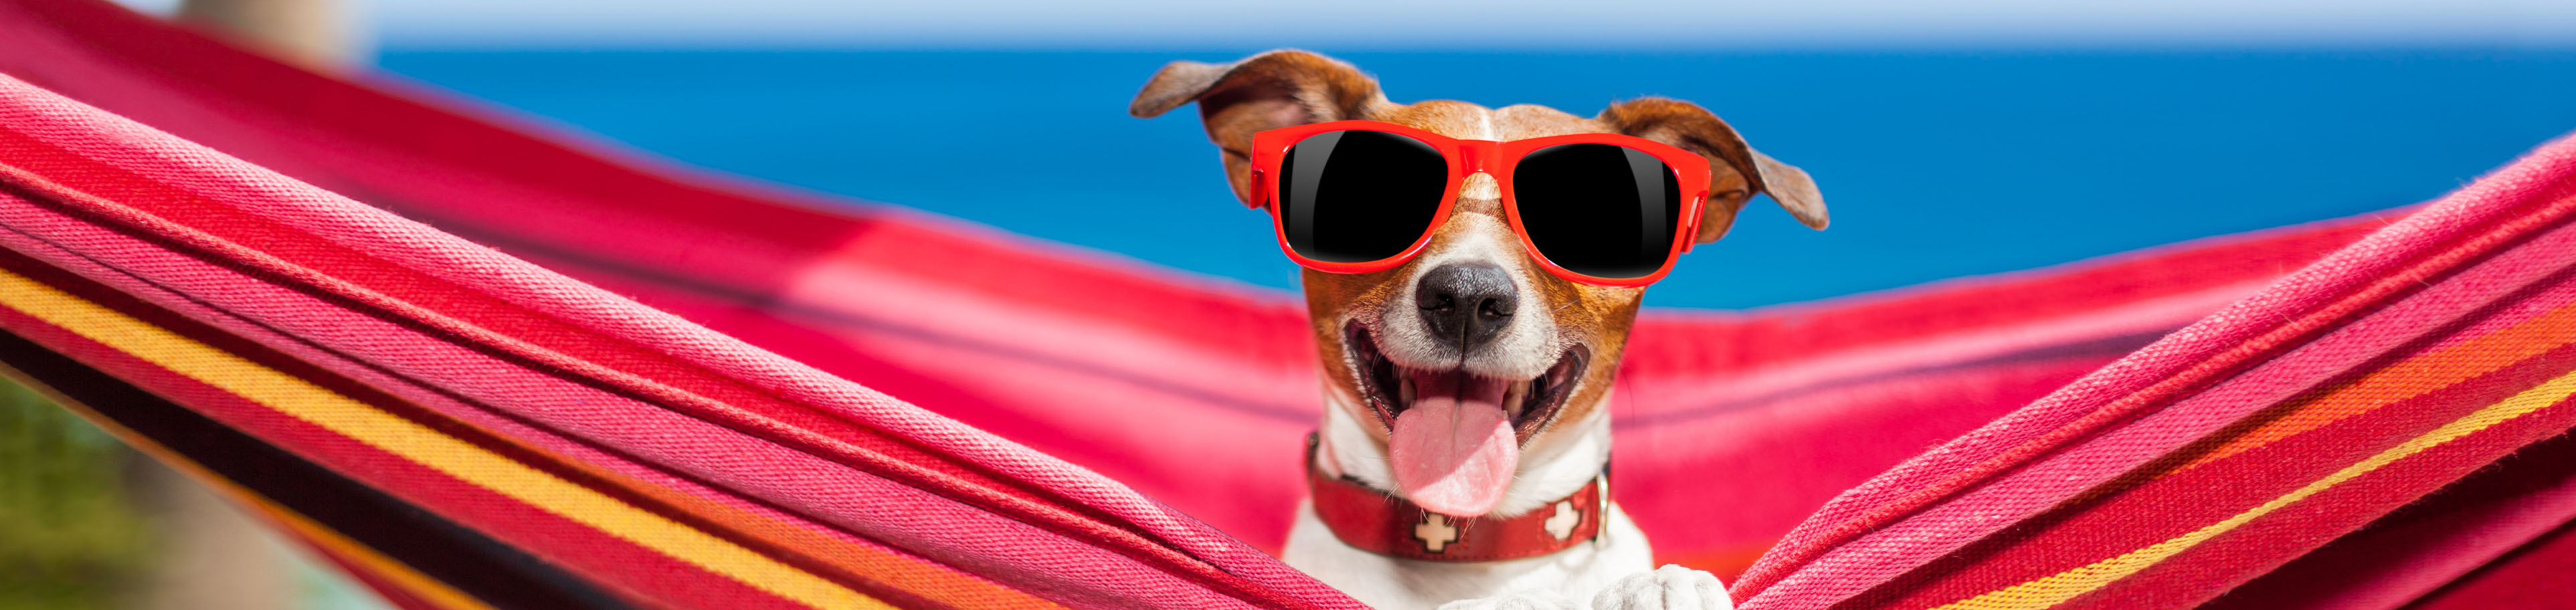 Kleiner Hund mit Sonnenbrille liegt in einer Hängematte.